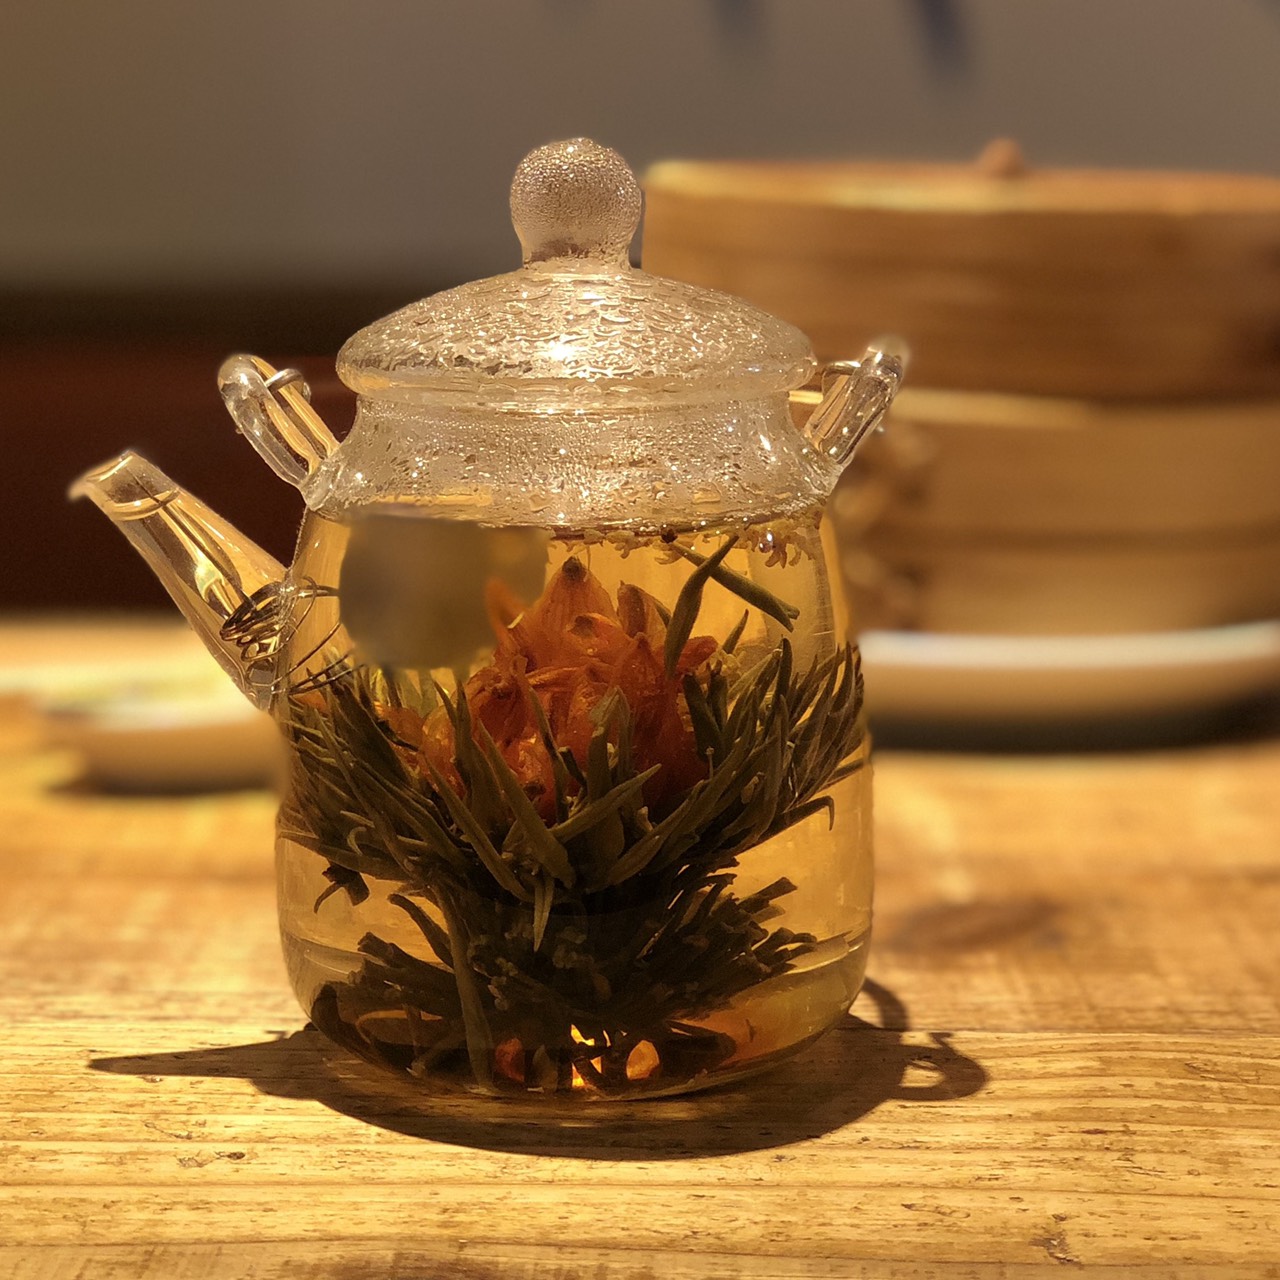 「金木犀の工芸茶」。